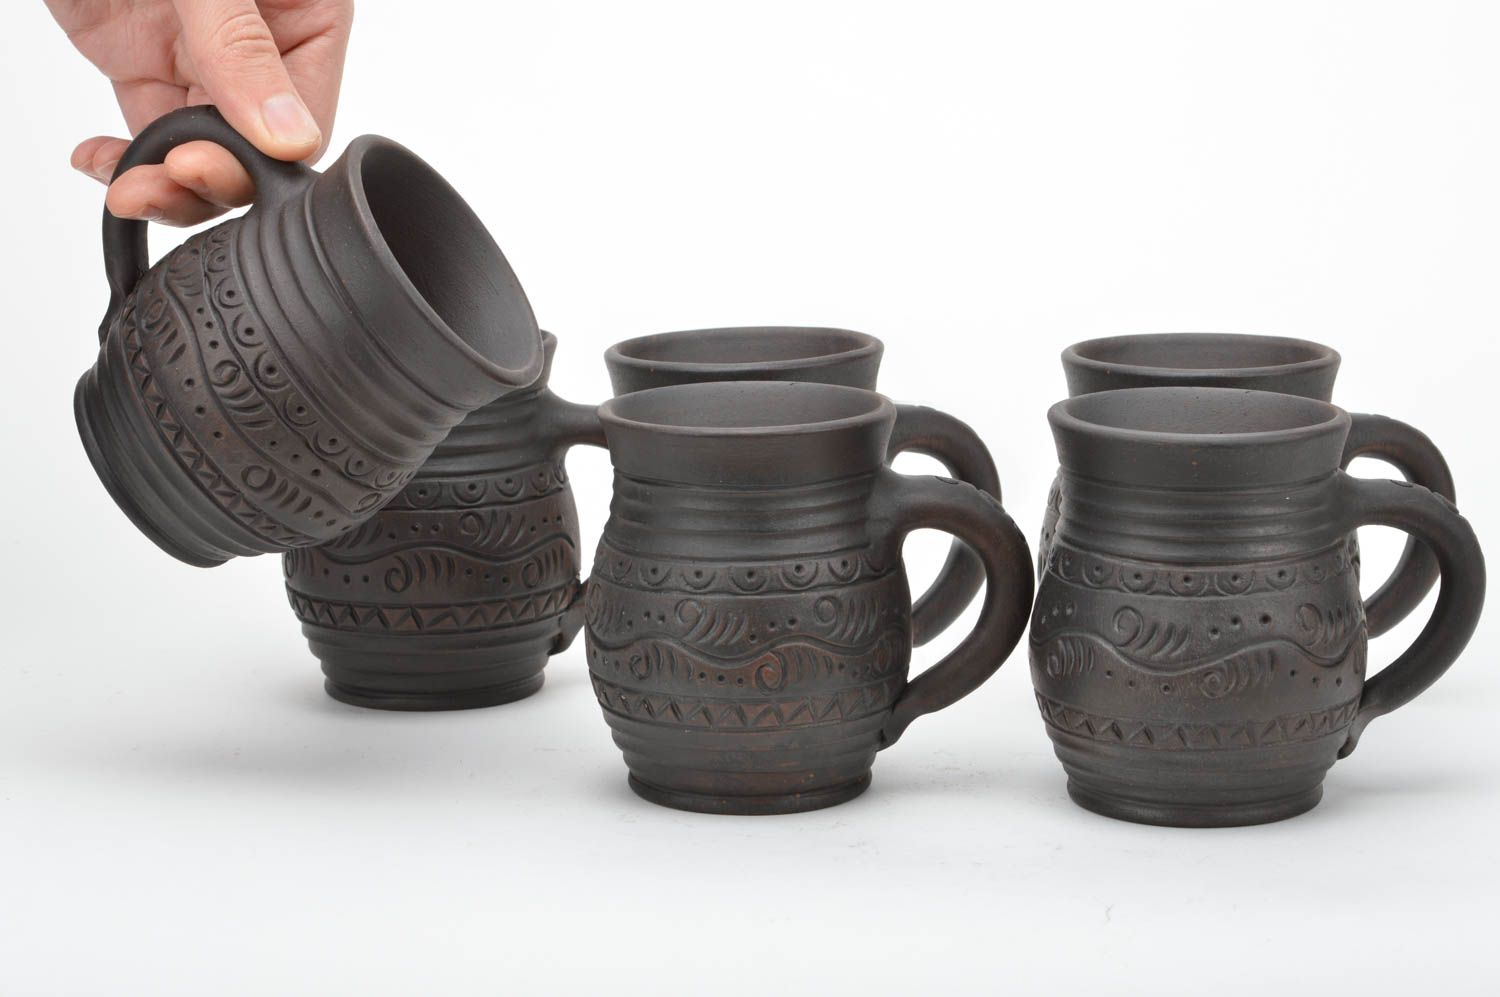 Глиняная посуда набор кружек из шести штук ручной работы молочная керамика фото 2